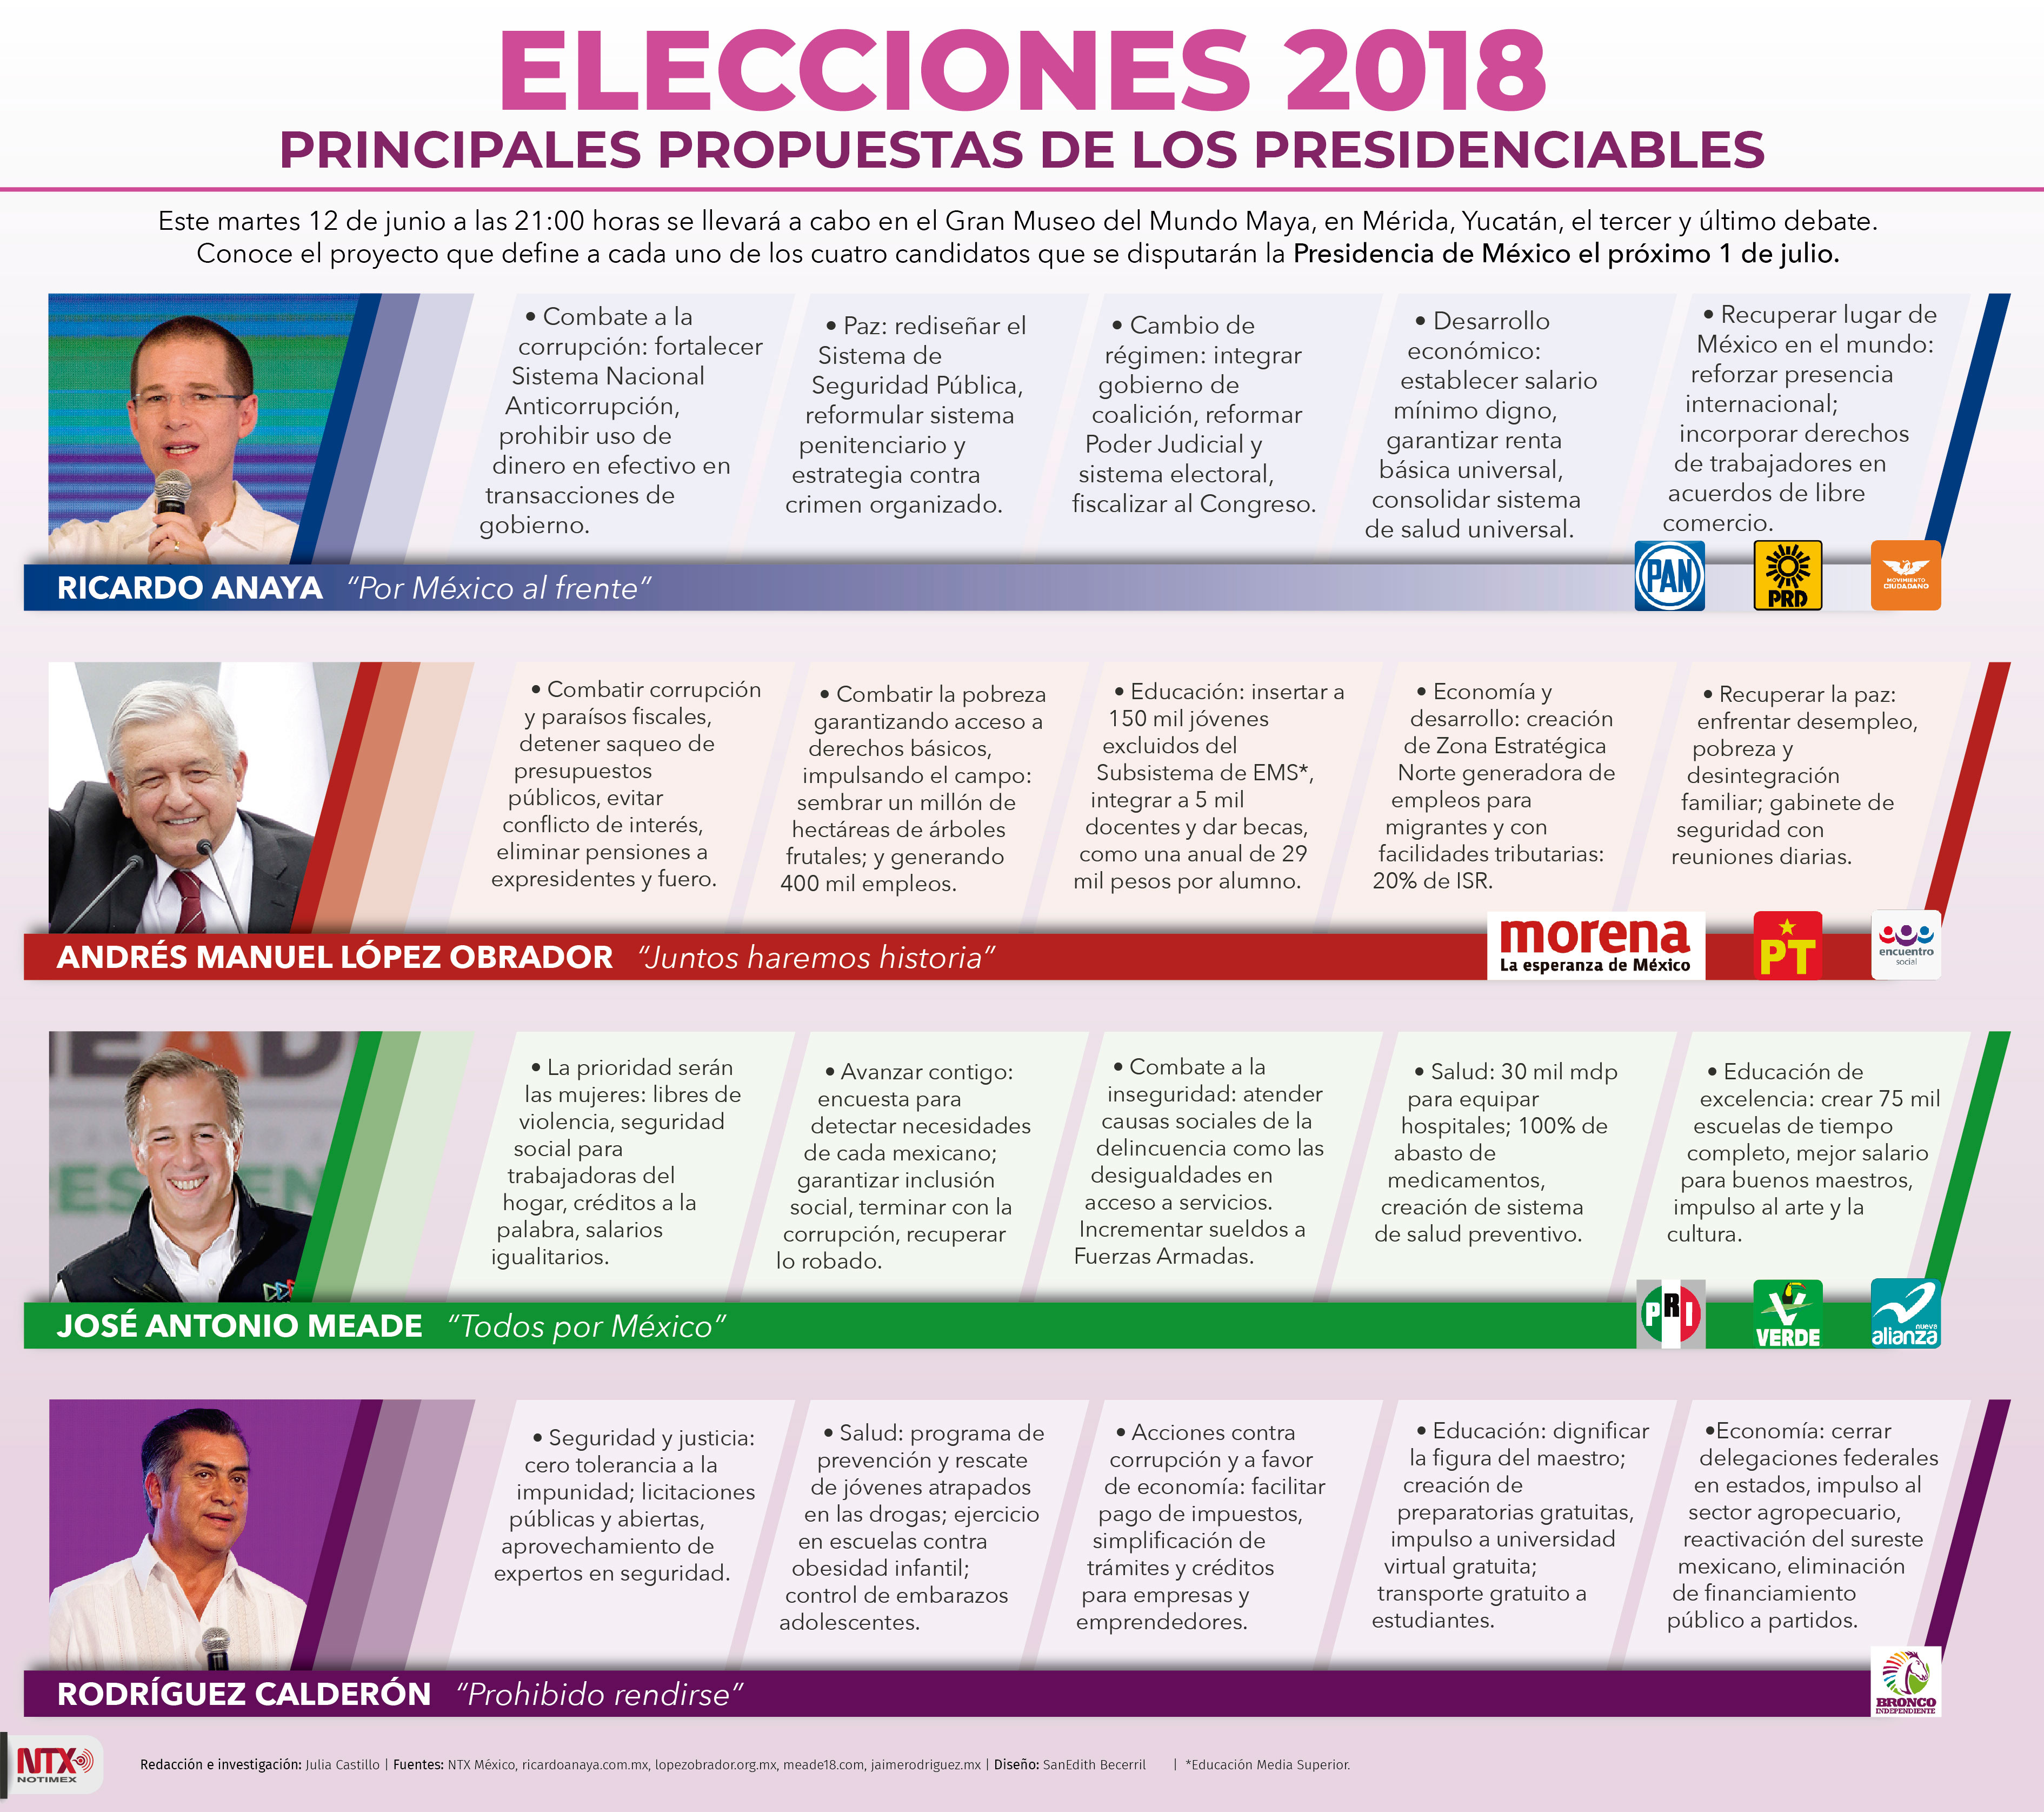 Elecciones 2018, principales propuestas de los presidenciables